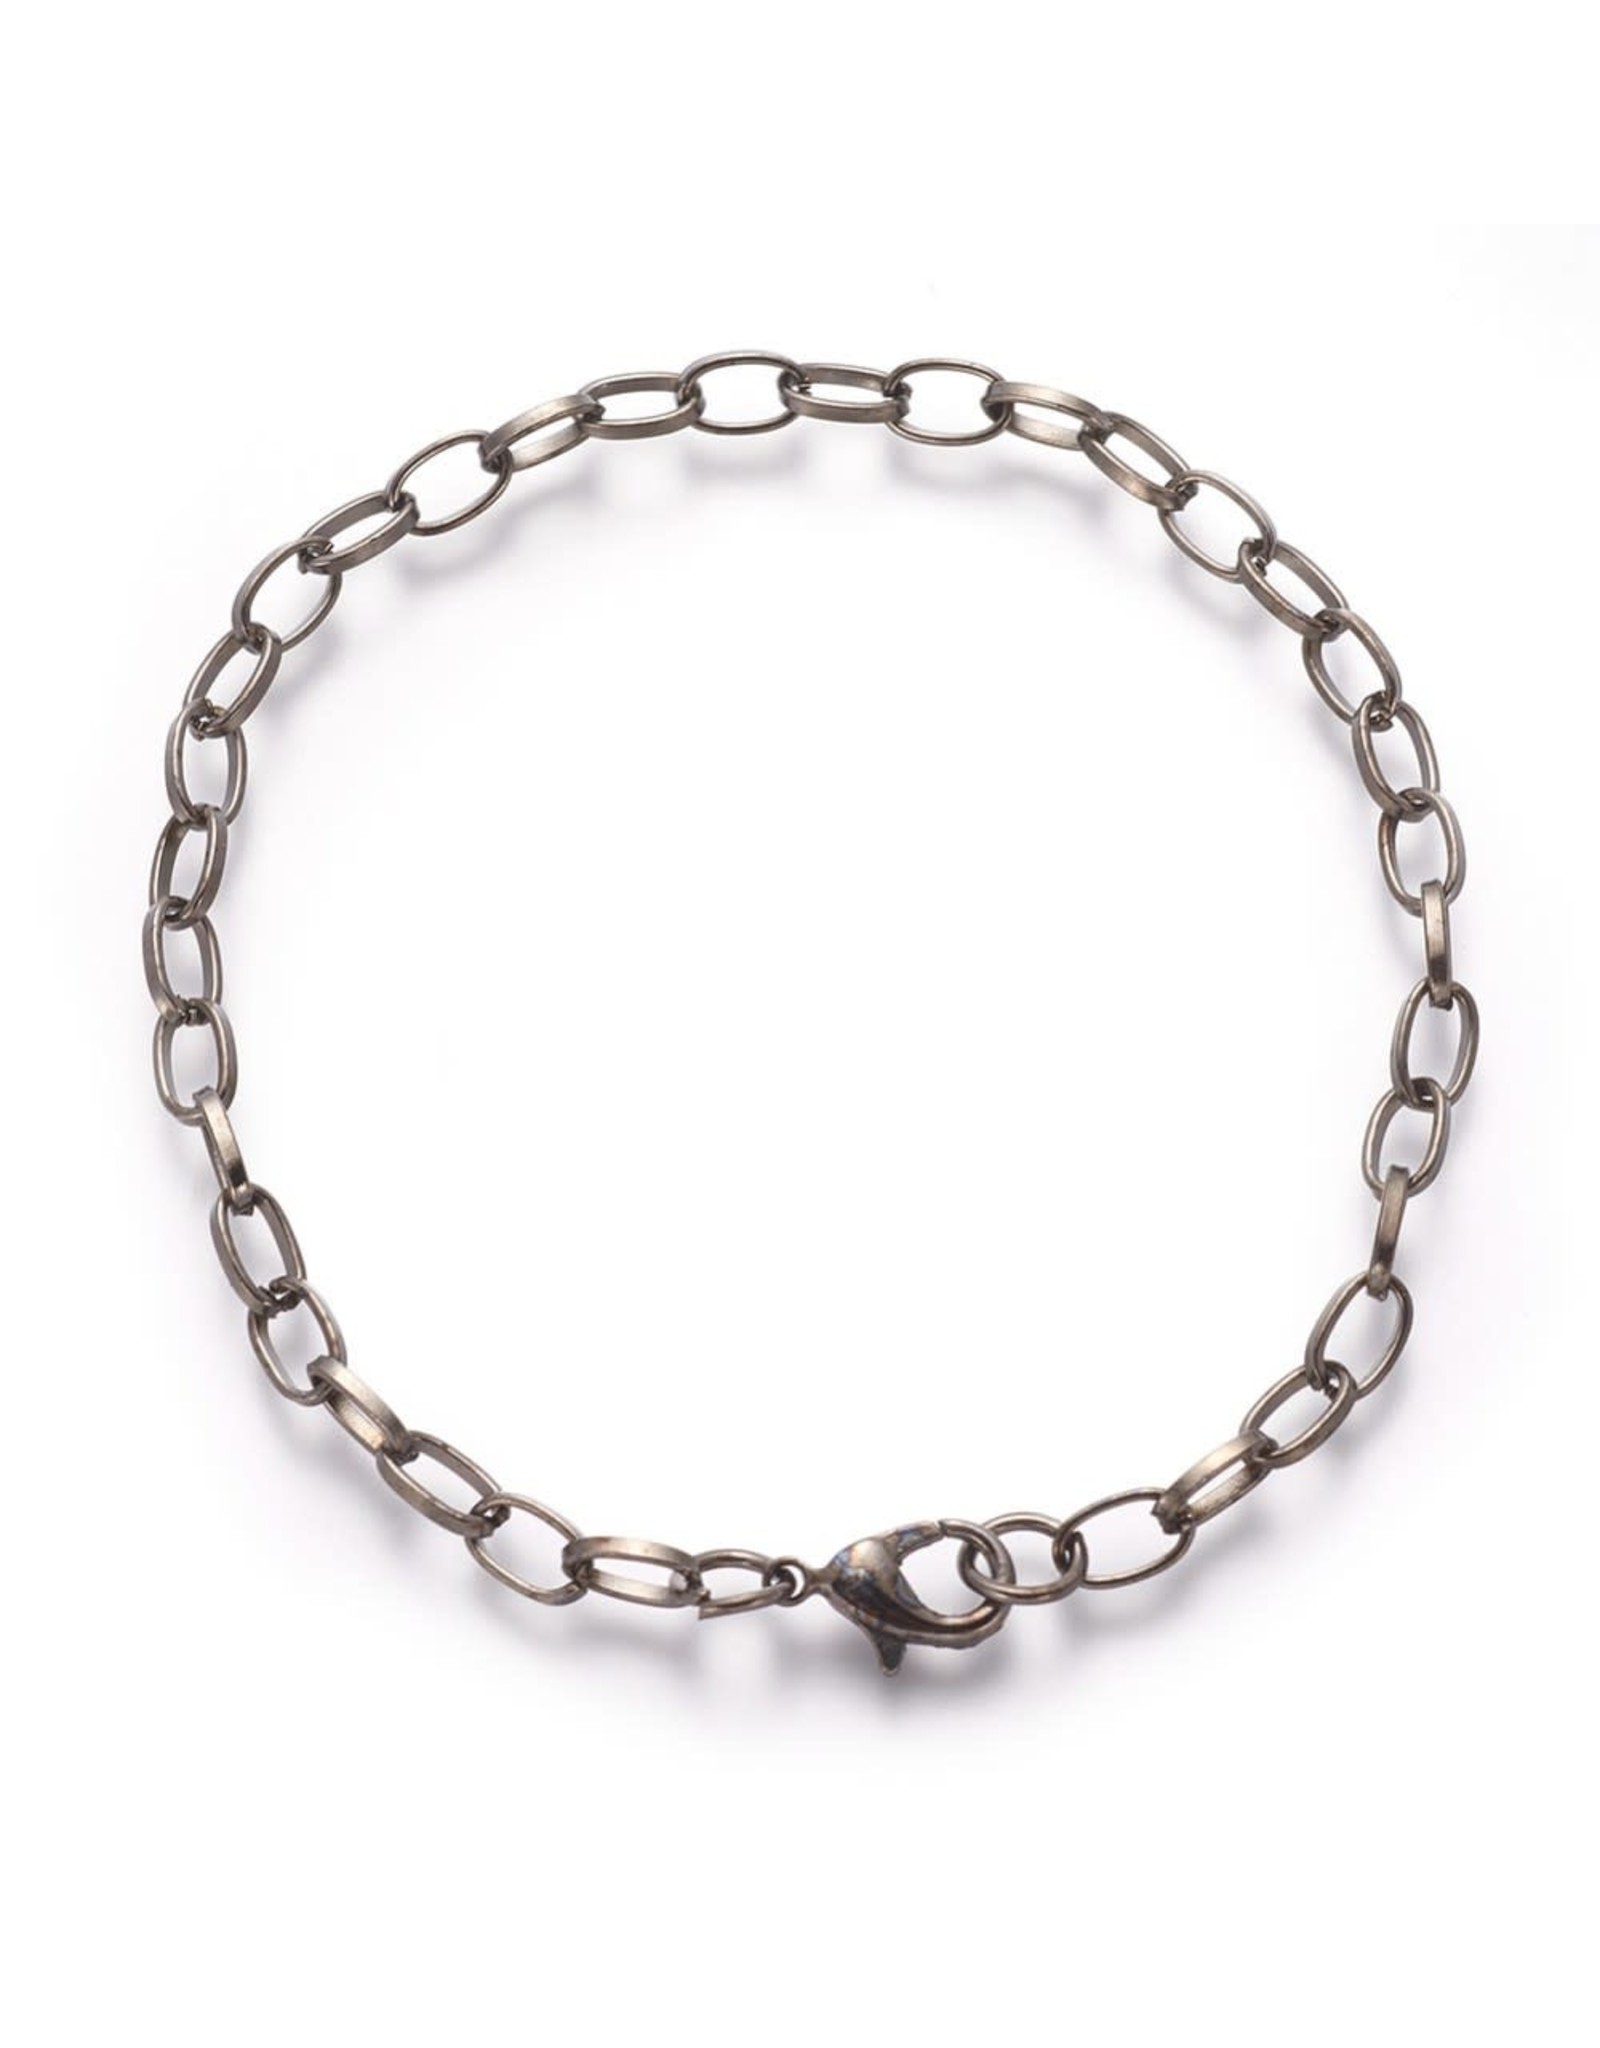 Bracelet Chain 8" Gunmetal Grey x5